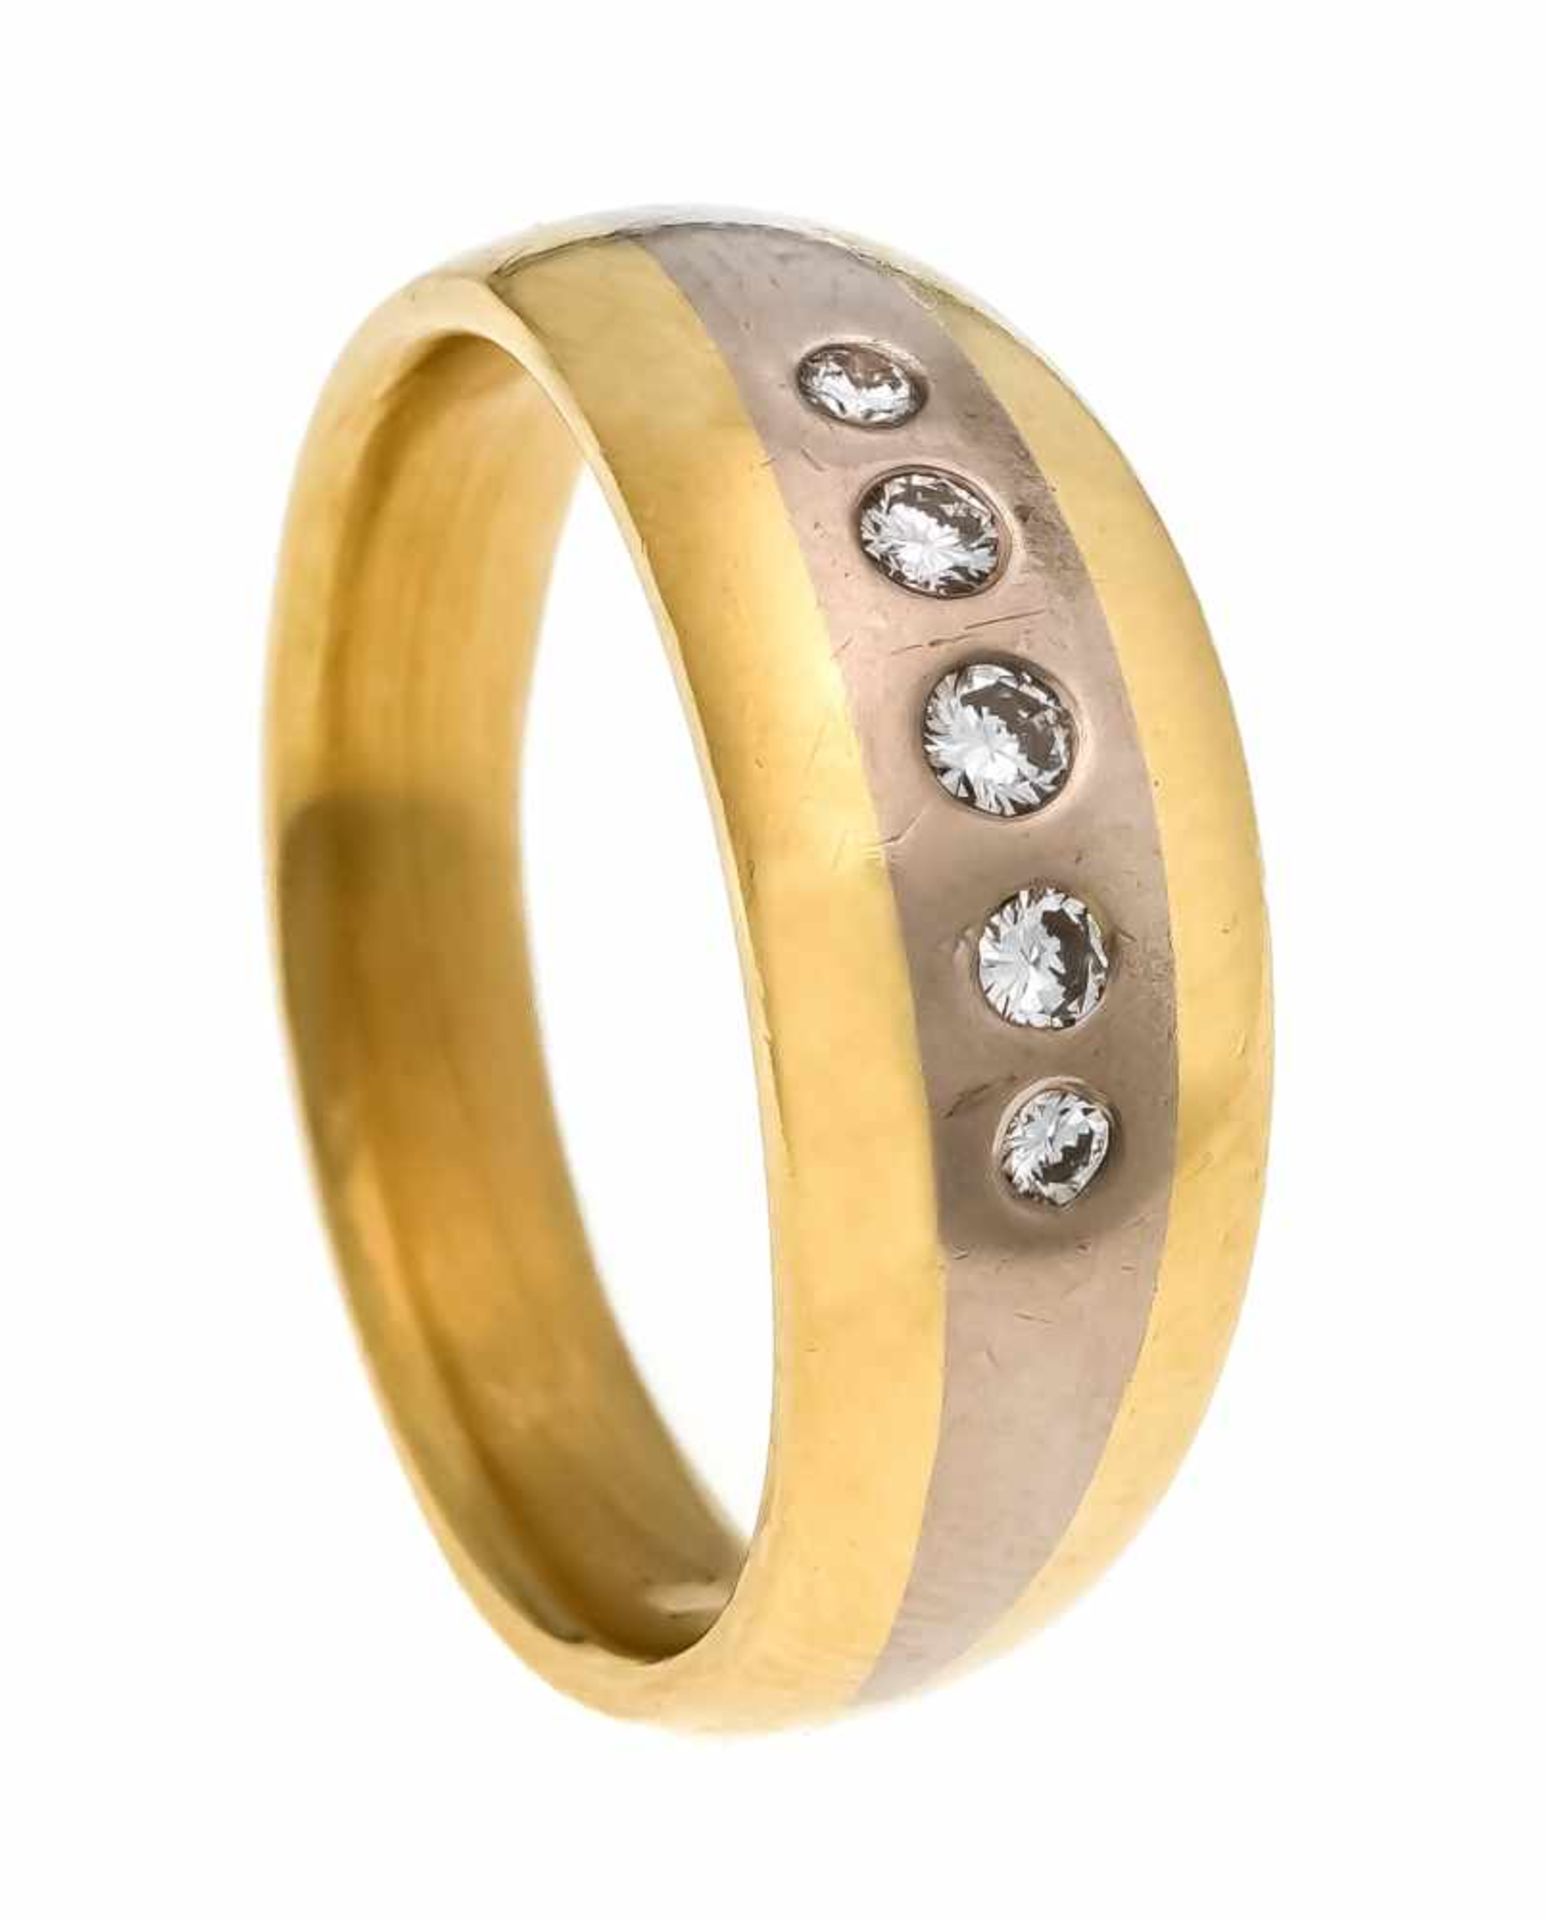 Brillant-Ring GG/WG 750/000 mit 5 Brillanten, zus. 0,18 ct W/VVS, RG 59, 10,2 g